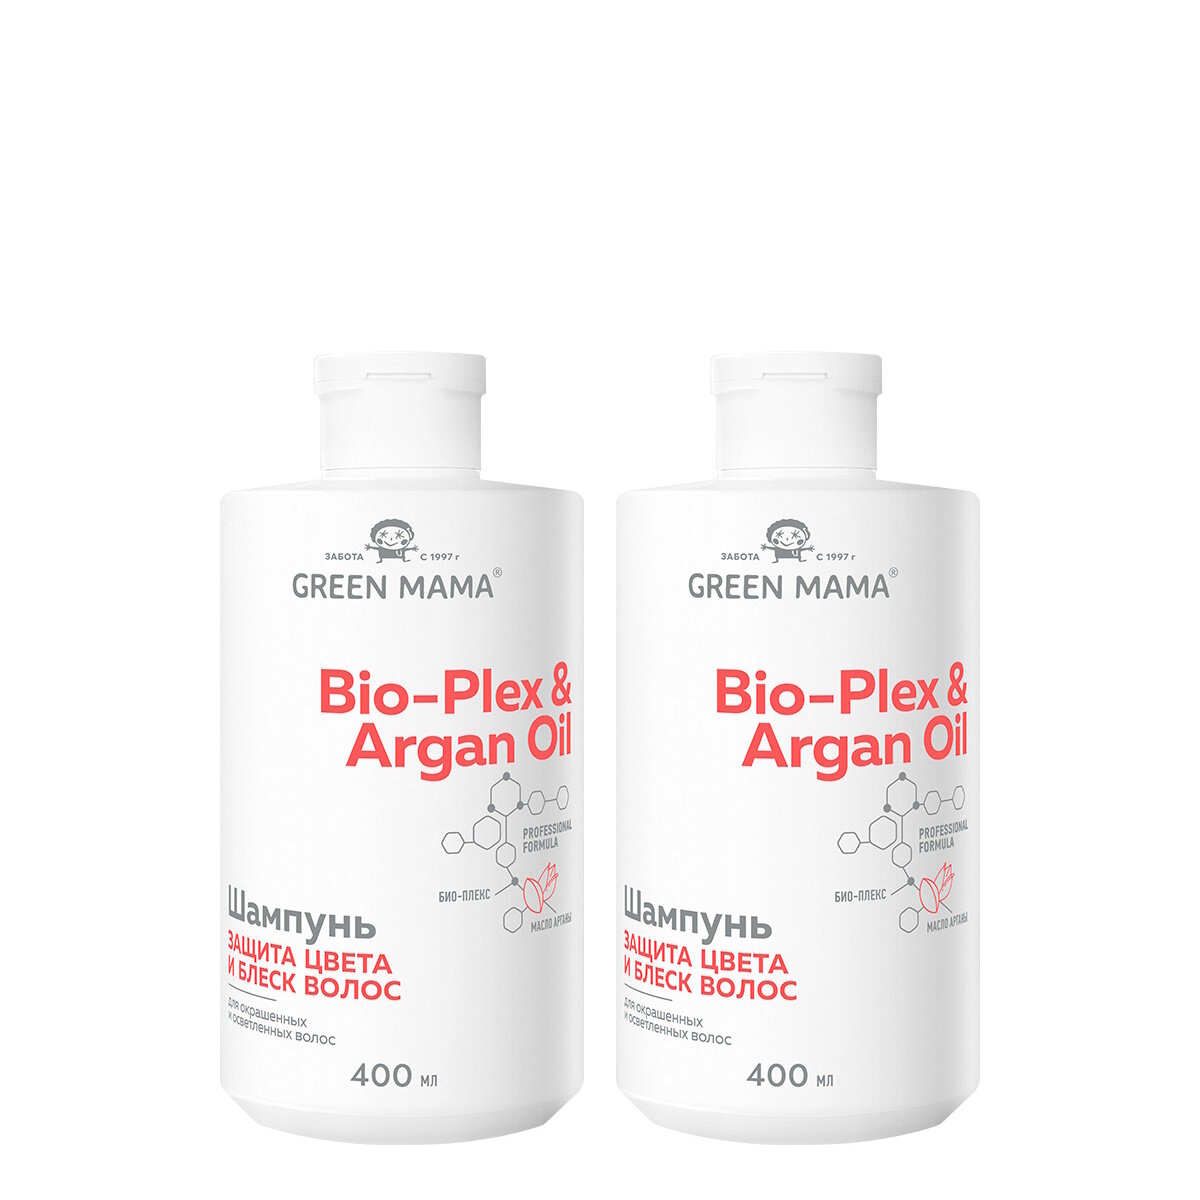 Шампунь BIO-PLEX & ARGAN OIL для защиты цвета GREEN MAMA с маслом арганы 400 мл - 2 шт